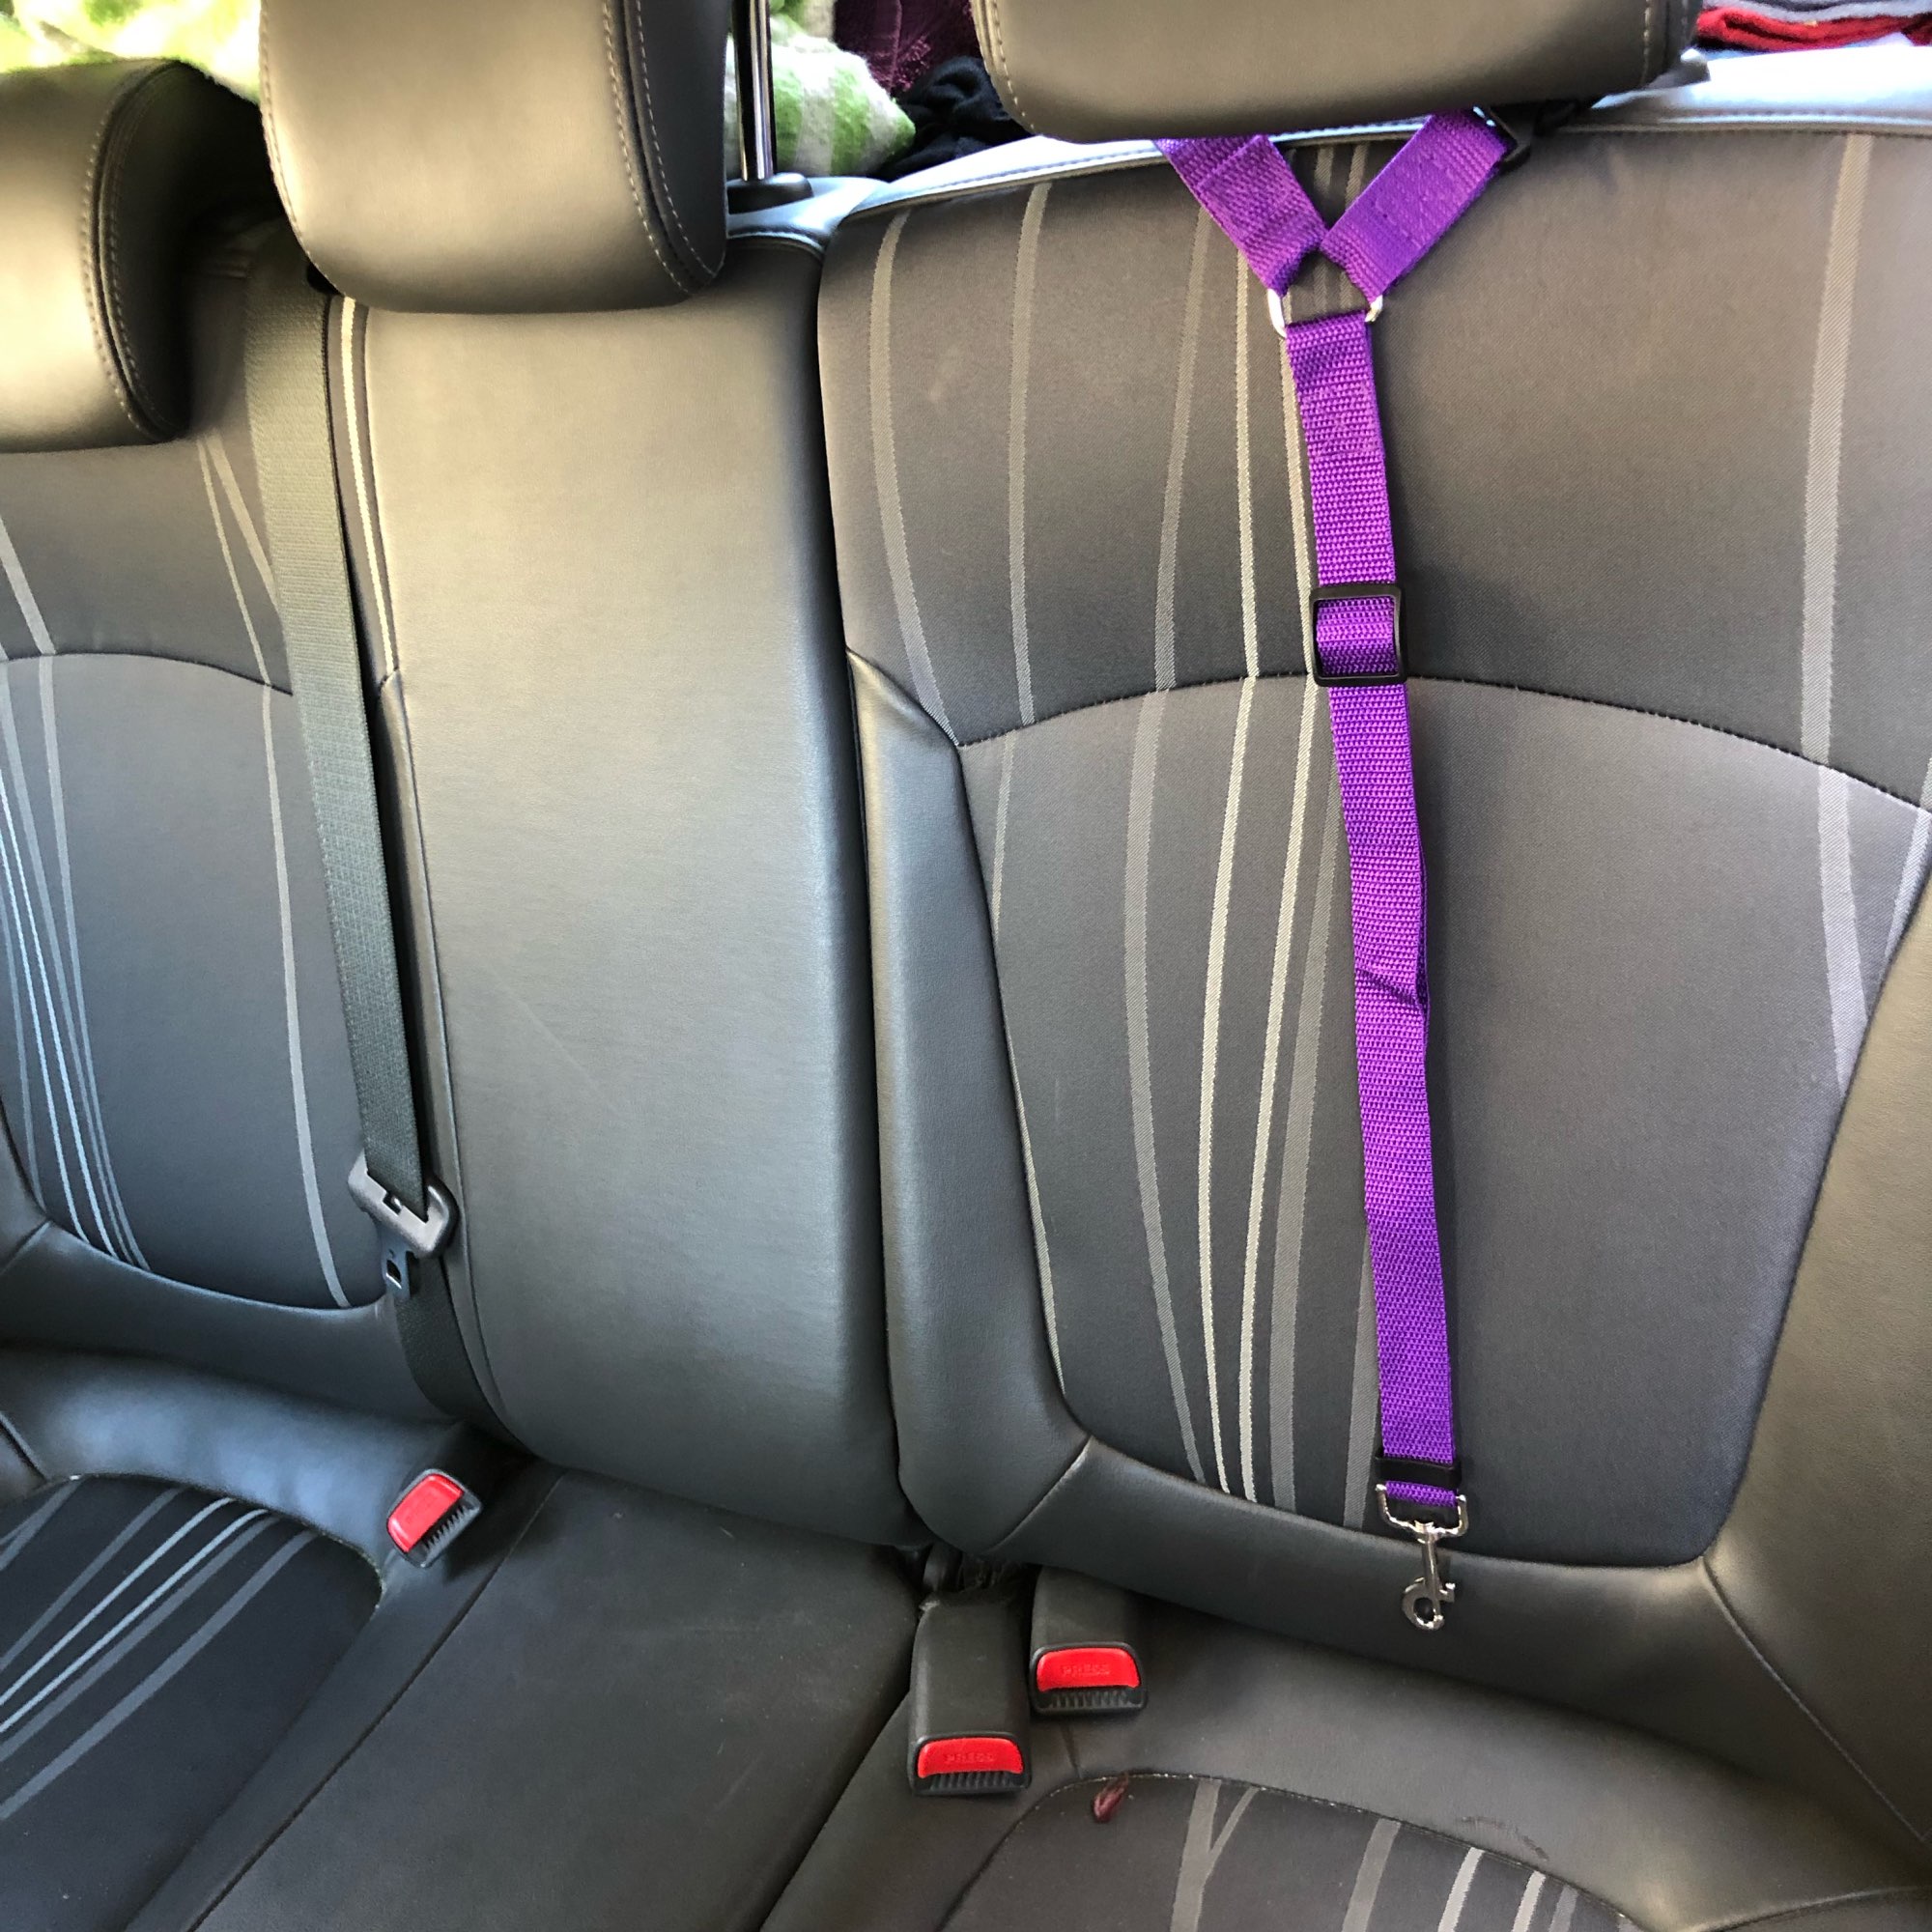 Adjustable Car Seat Belt - Keeping Your Dog Safe